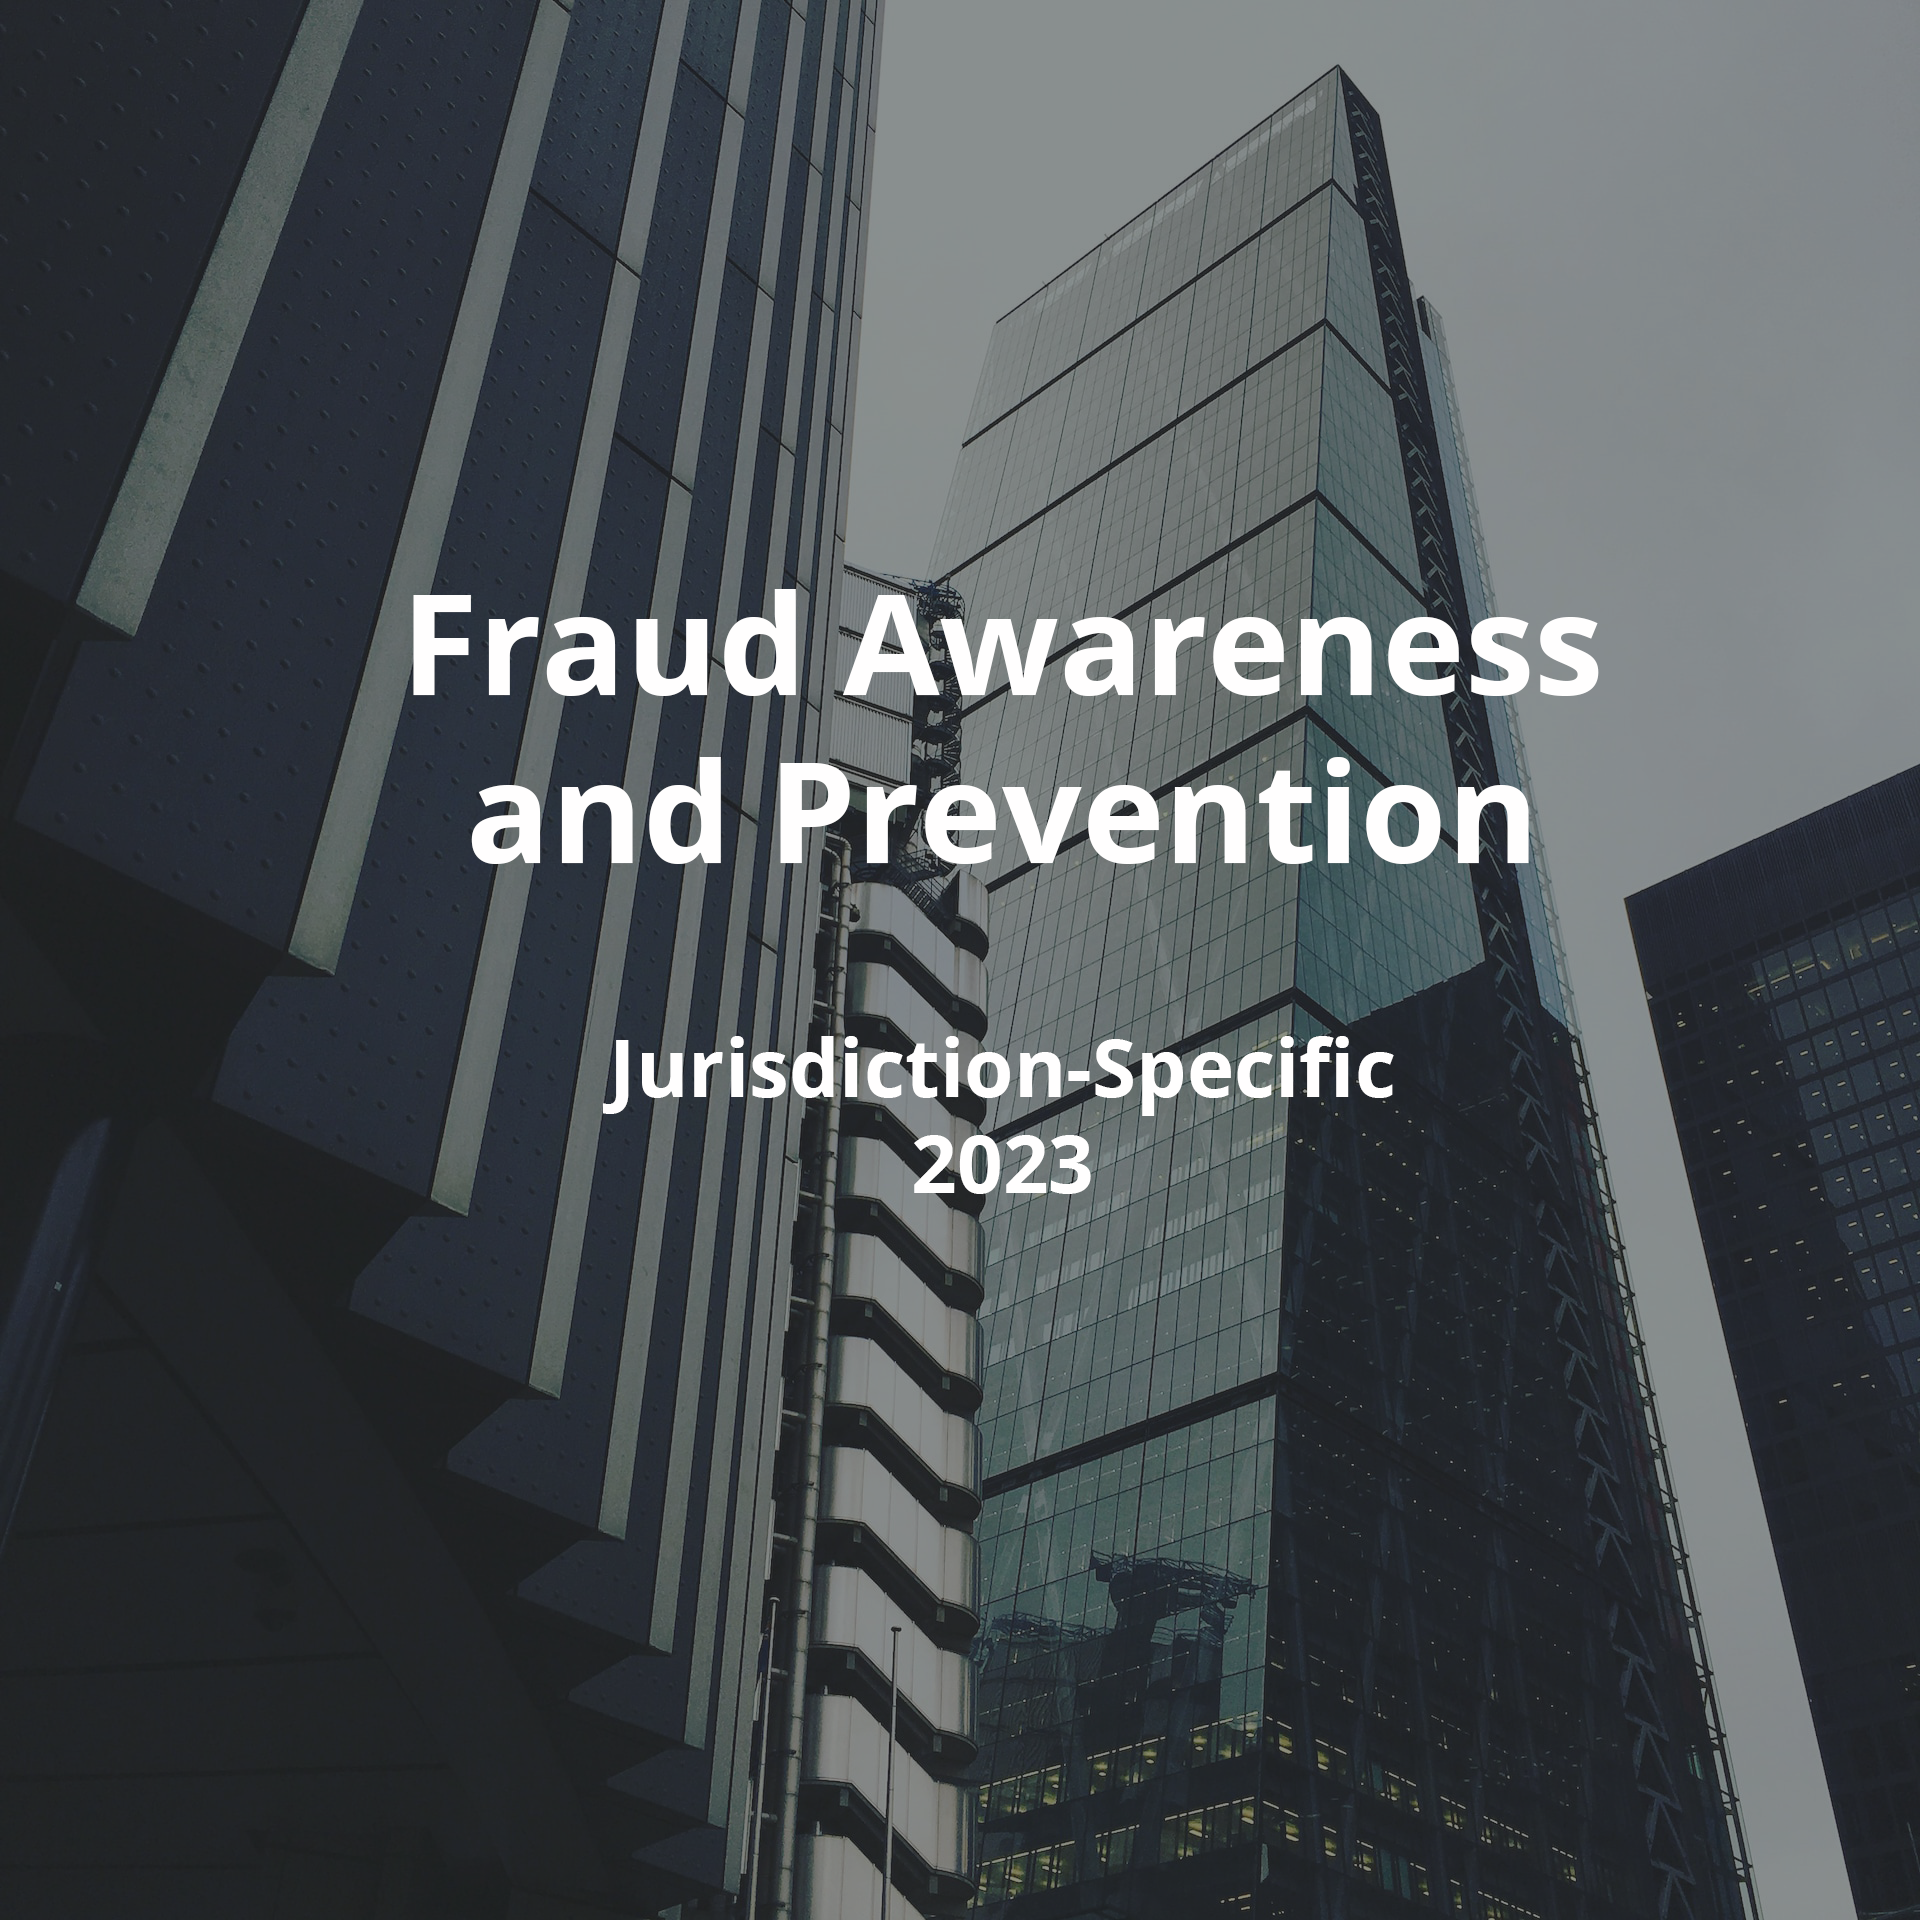 Fraud Awareness - Image Square - 28.06.23.png